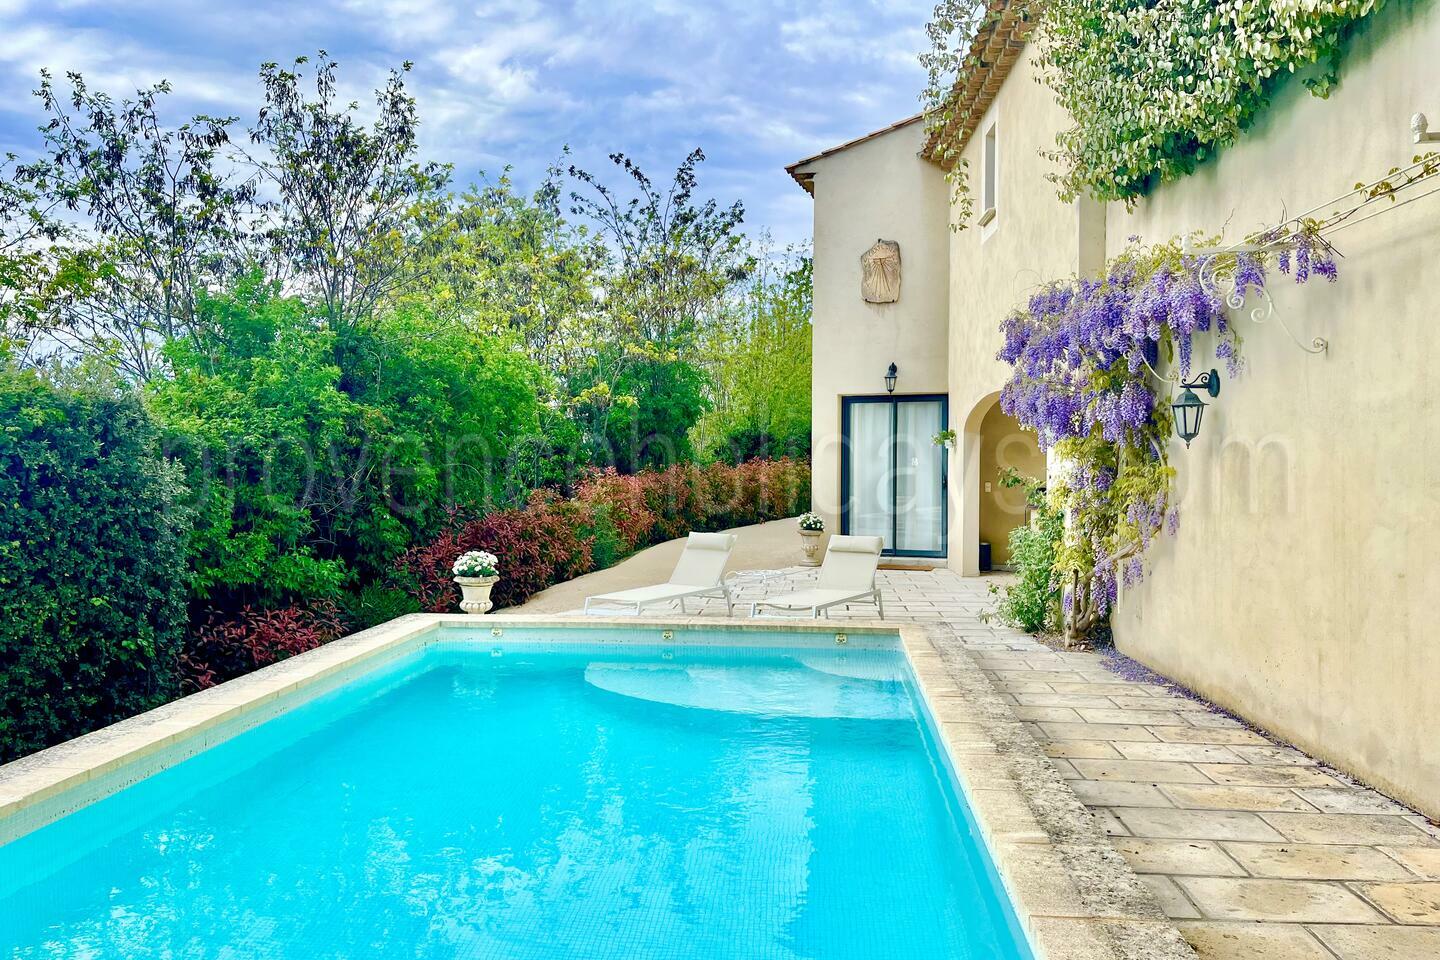 Maison de vacances dans un village du Luberon avec piscine chauffée. 1 - Une maison dans Ménerbes: Villa: Pool